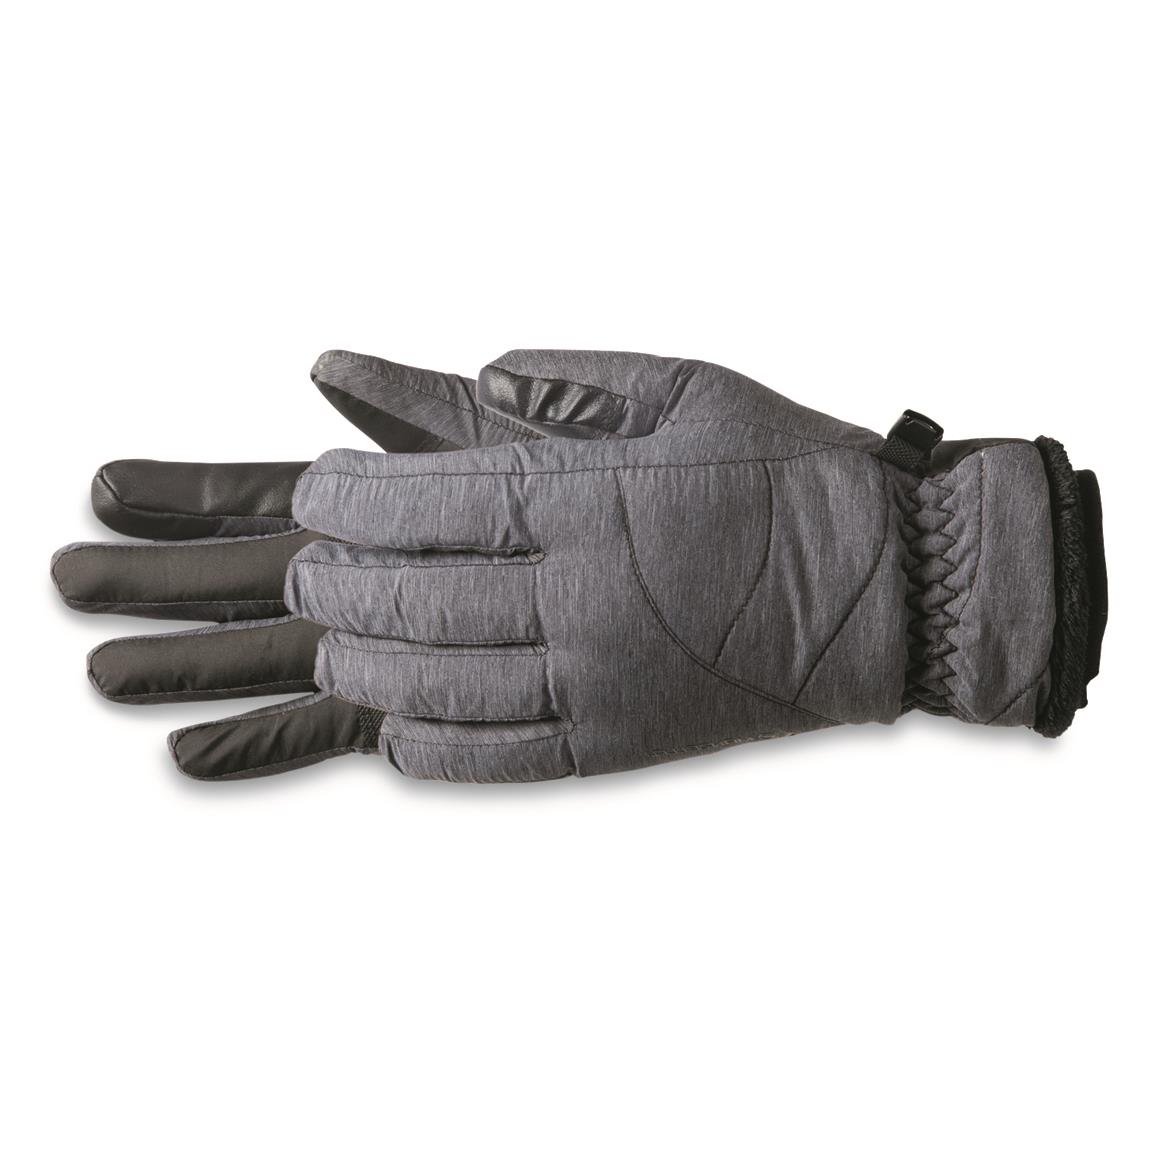 Manzella Women's Marlow TouchTip Waterproof Insulated Ski Gloves, Black Heather